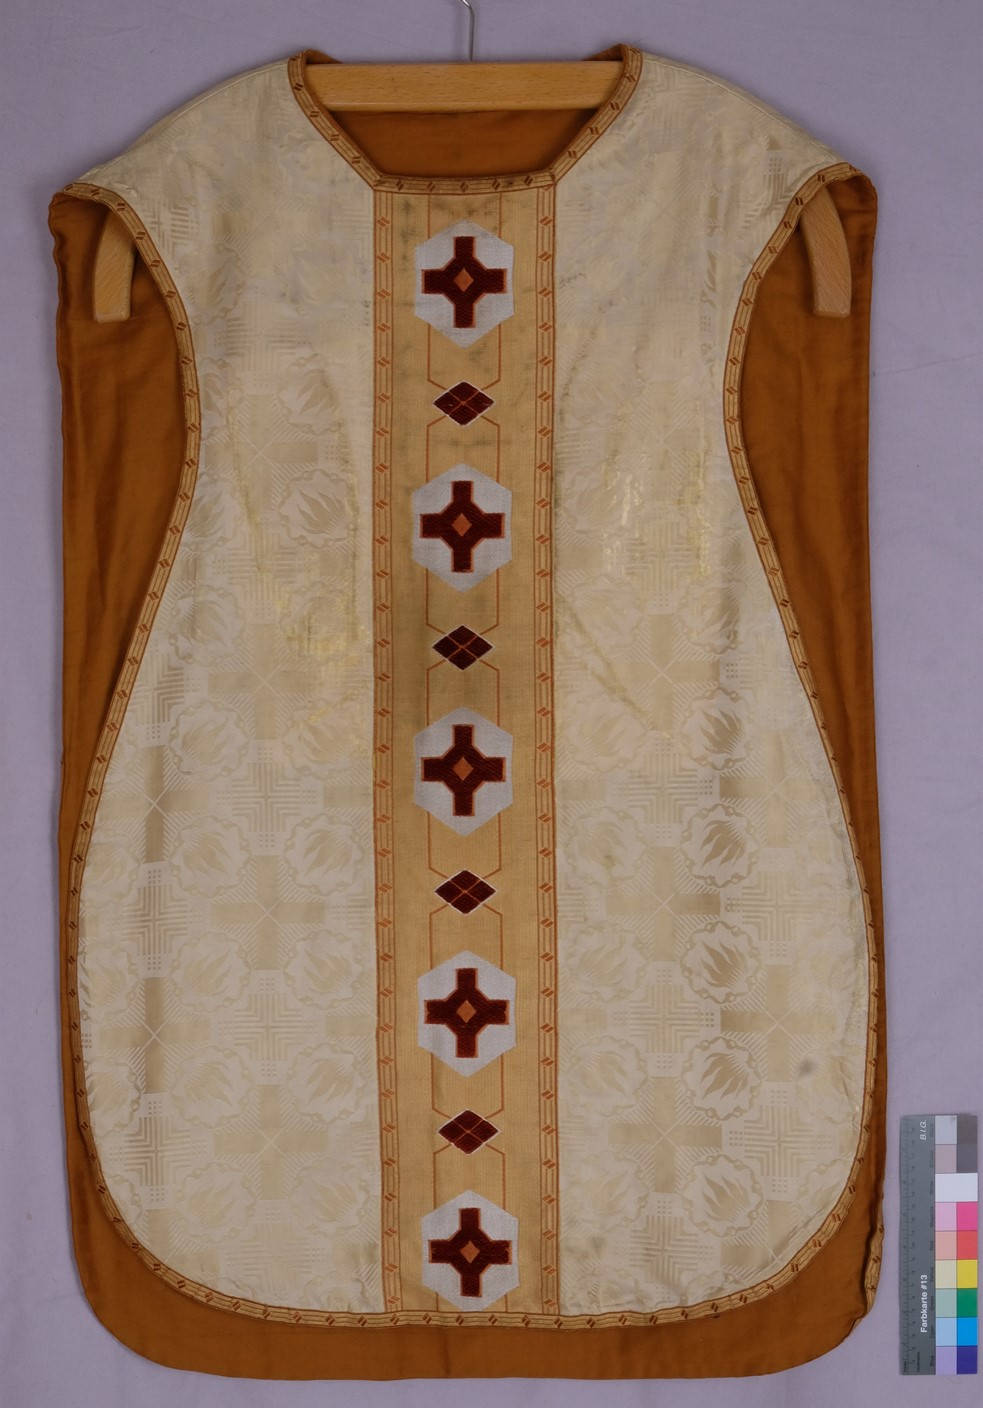 Kasel, Hersteller unbekannt,
20. Jh., St. Mauritius und Heilig
Geist Meerbusch, Restauriert
von Textilrestaurierung Lyko